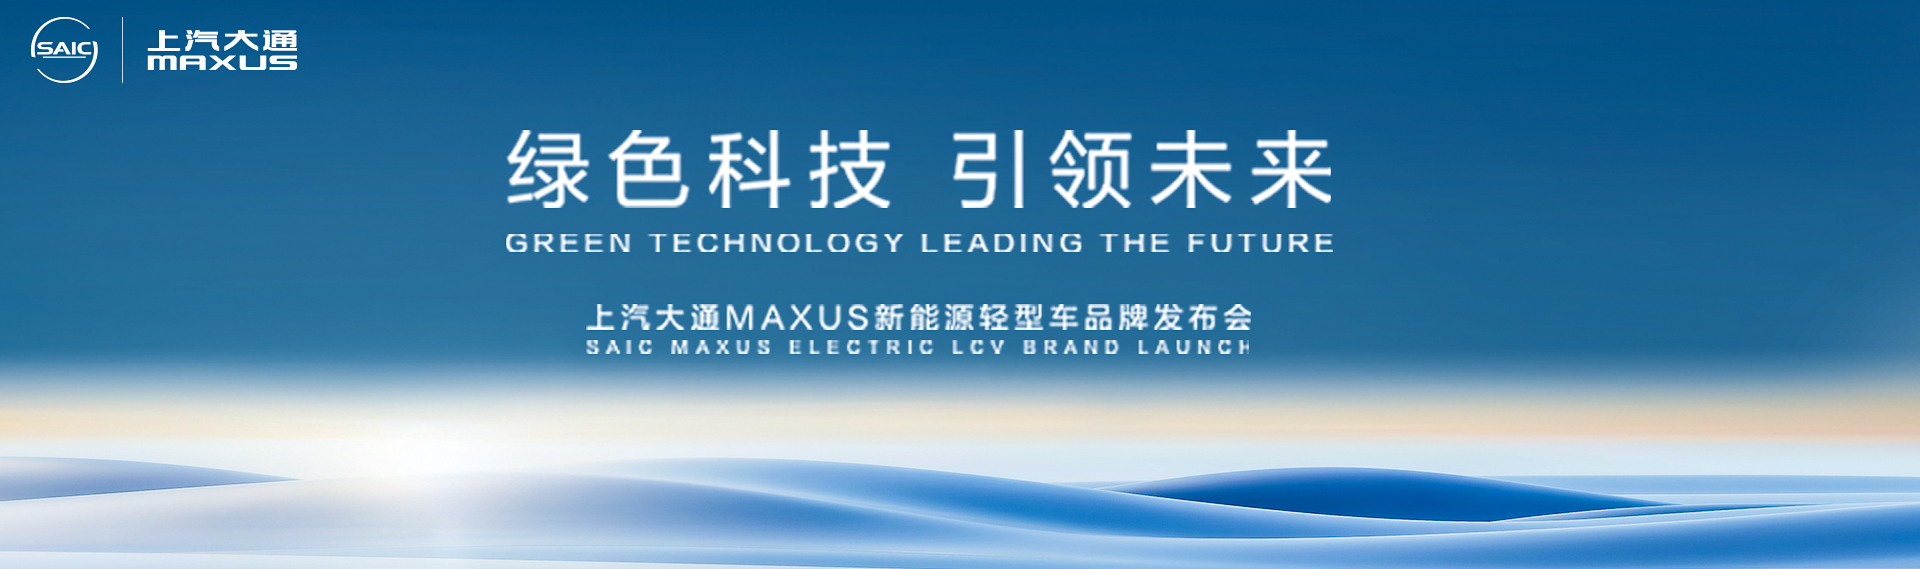 绿色科技 引领未来 上汽大通MAXUS新能源轻型车品牌发布会